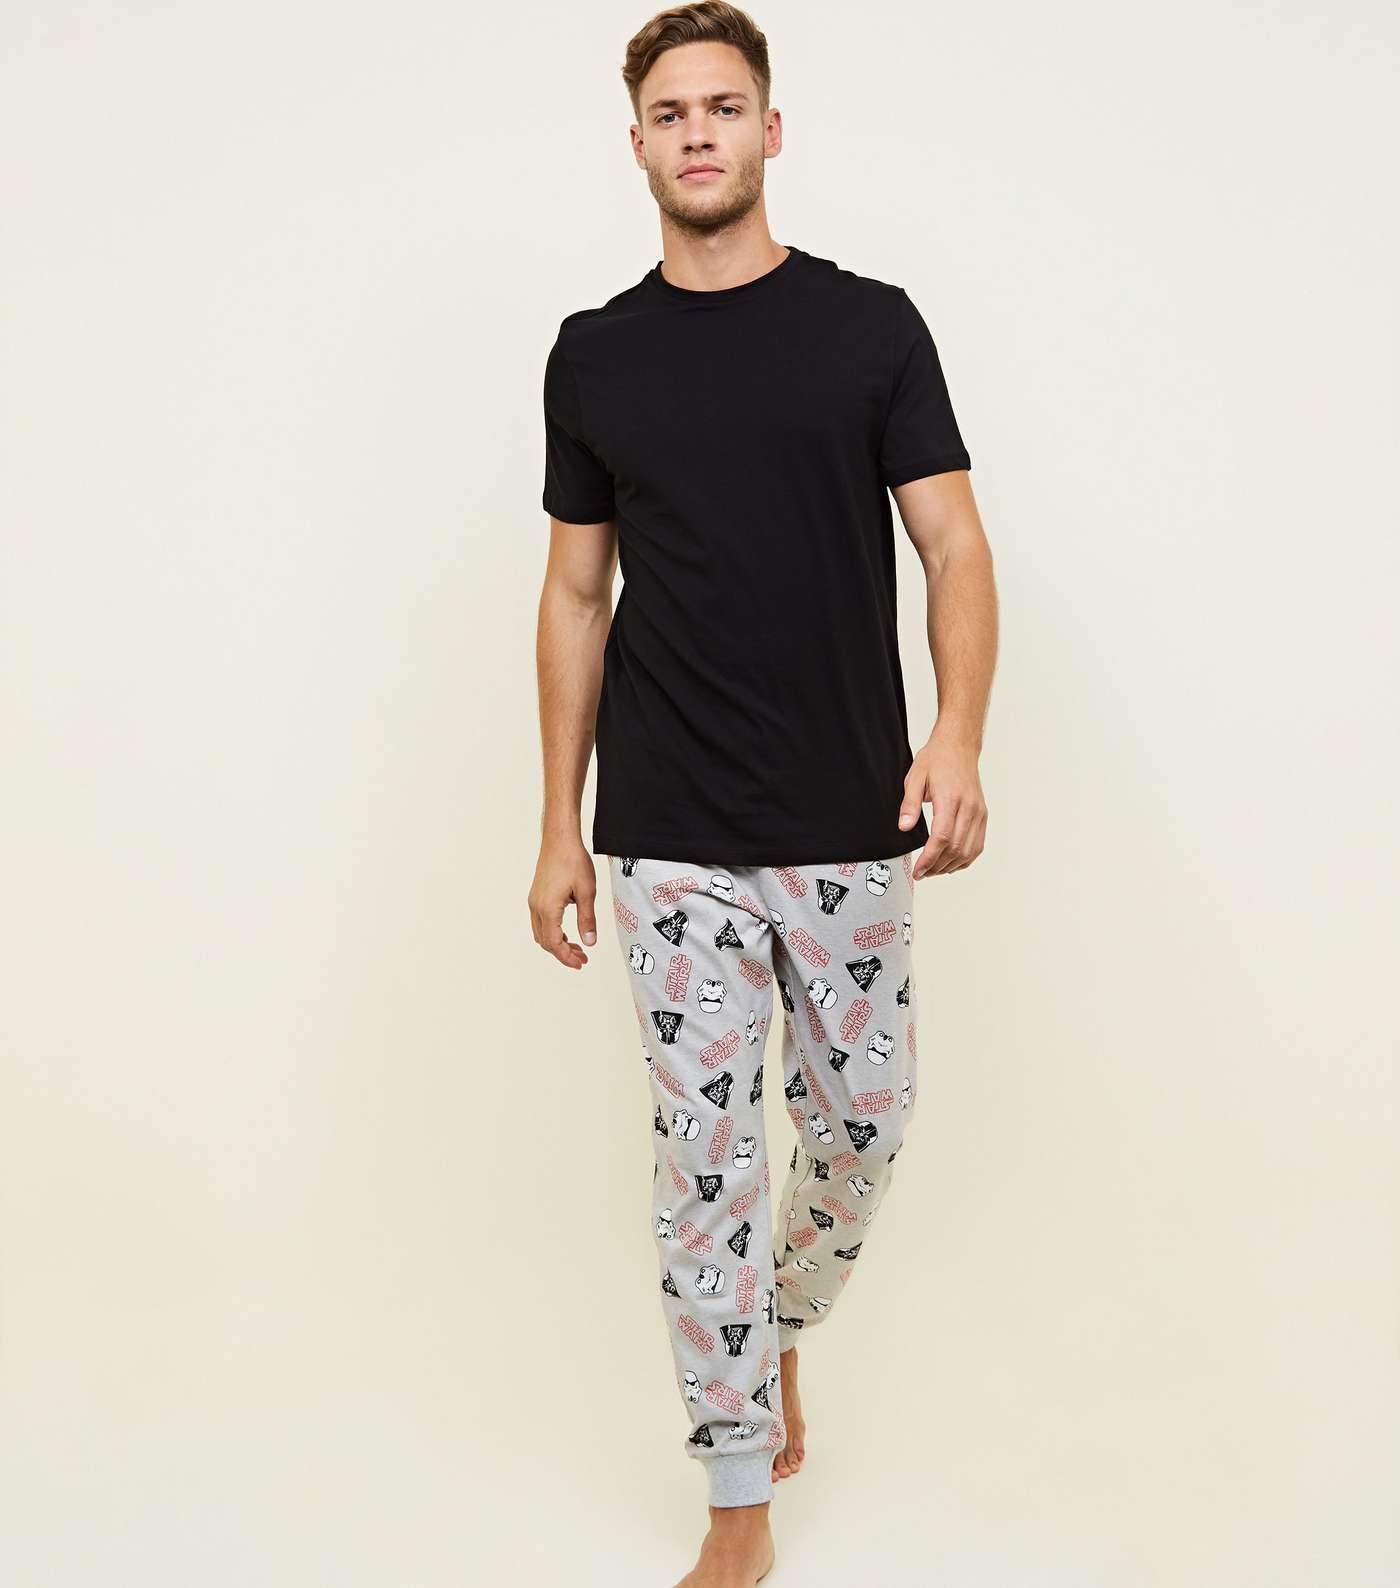 Multicoloured Star Wars Pyjama Joggers Image 2